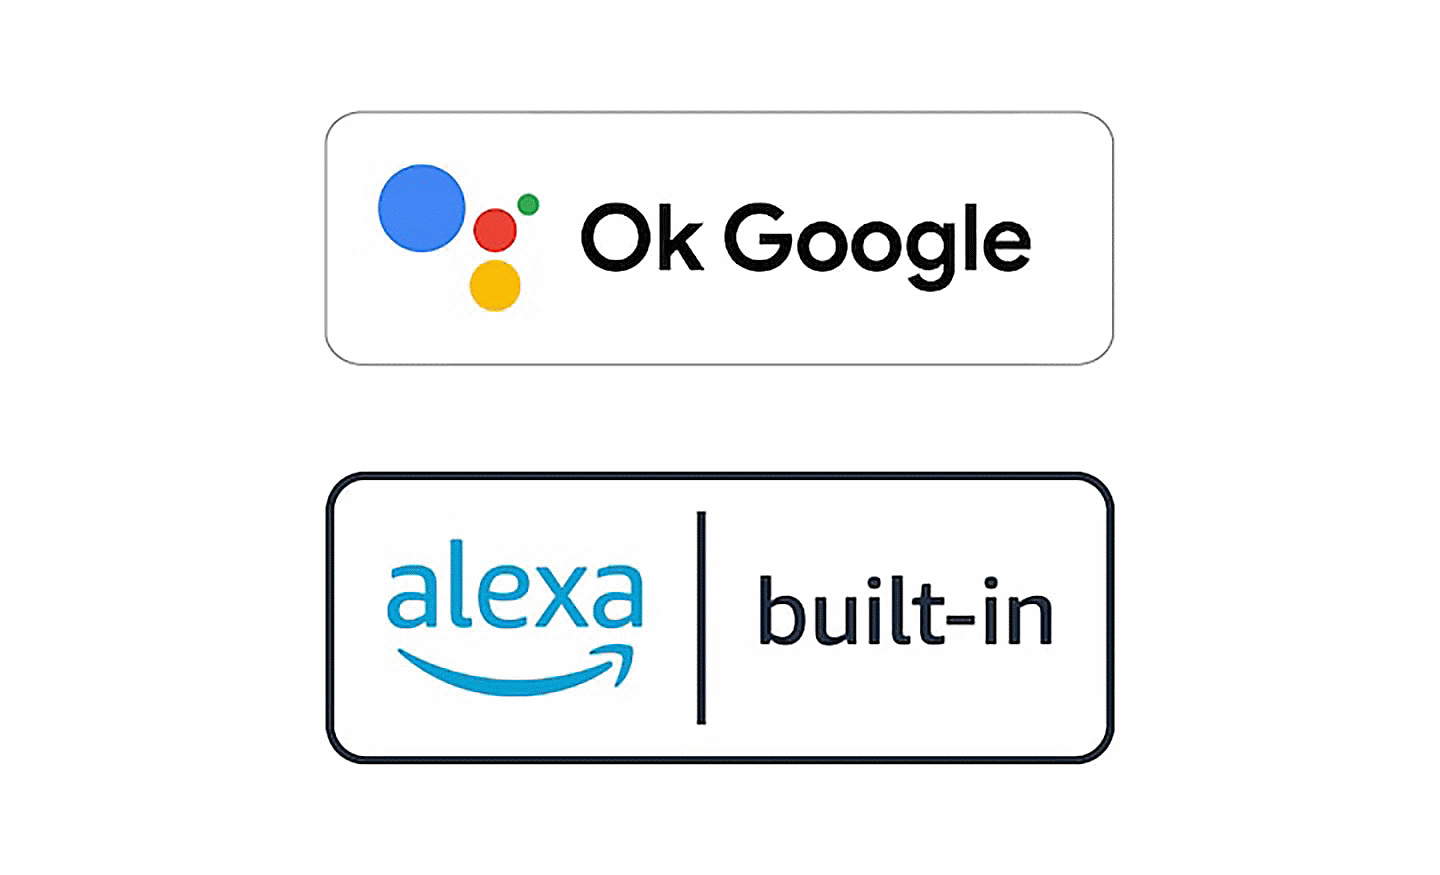 Obrázok loga Ok Google a loga alexa built-in